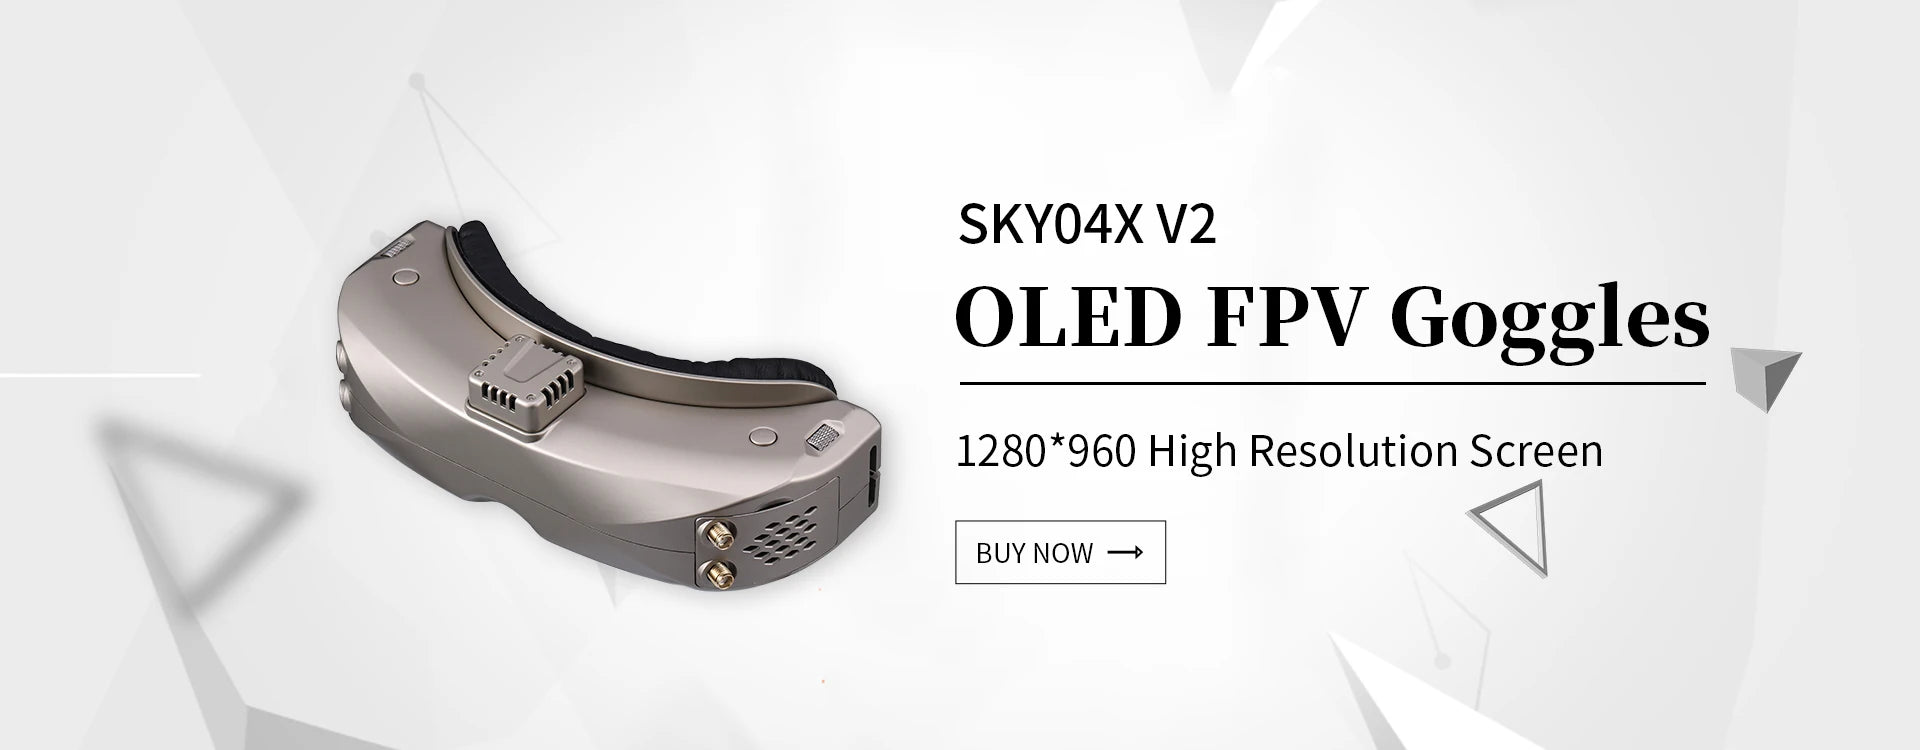 SKYZONE Steadyview/Rapidmix Receiver, SKYO4X V2 OLED FPV Goggles 1280*